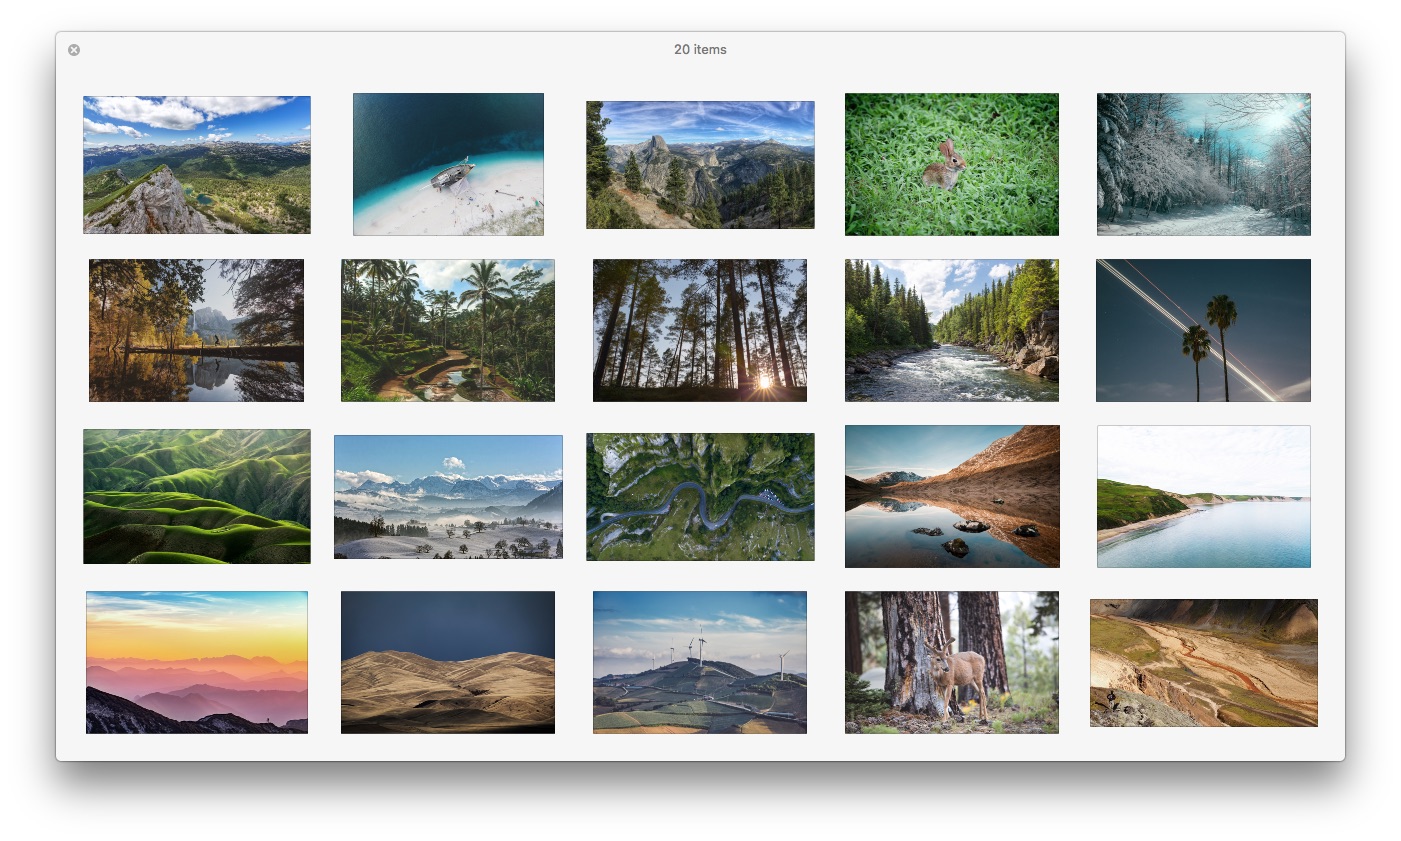 [Wallpaper] 20 hình nền đẹp nao lòng cho macOS High Seirra, iMac 5k, MacBook Pro Retina